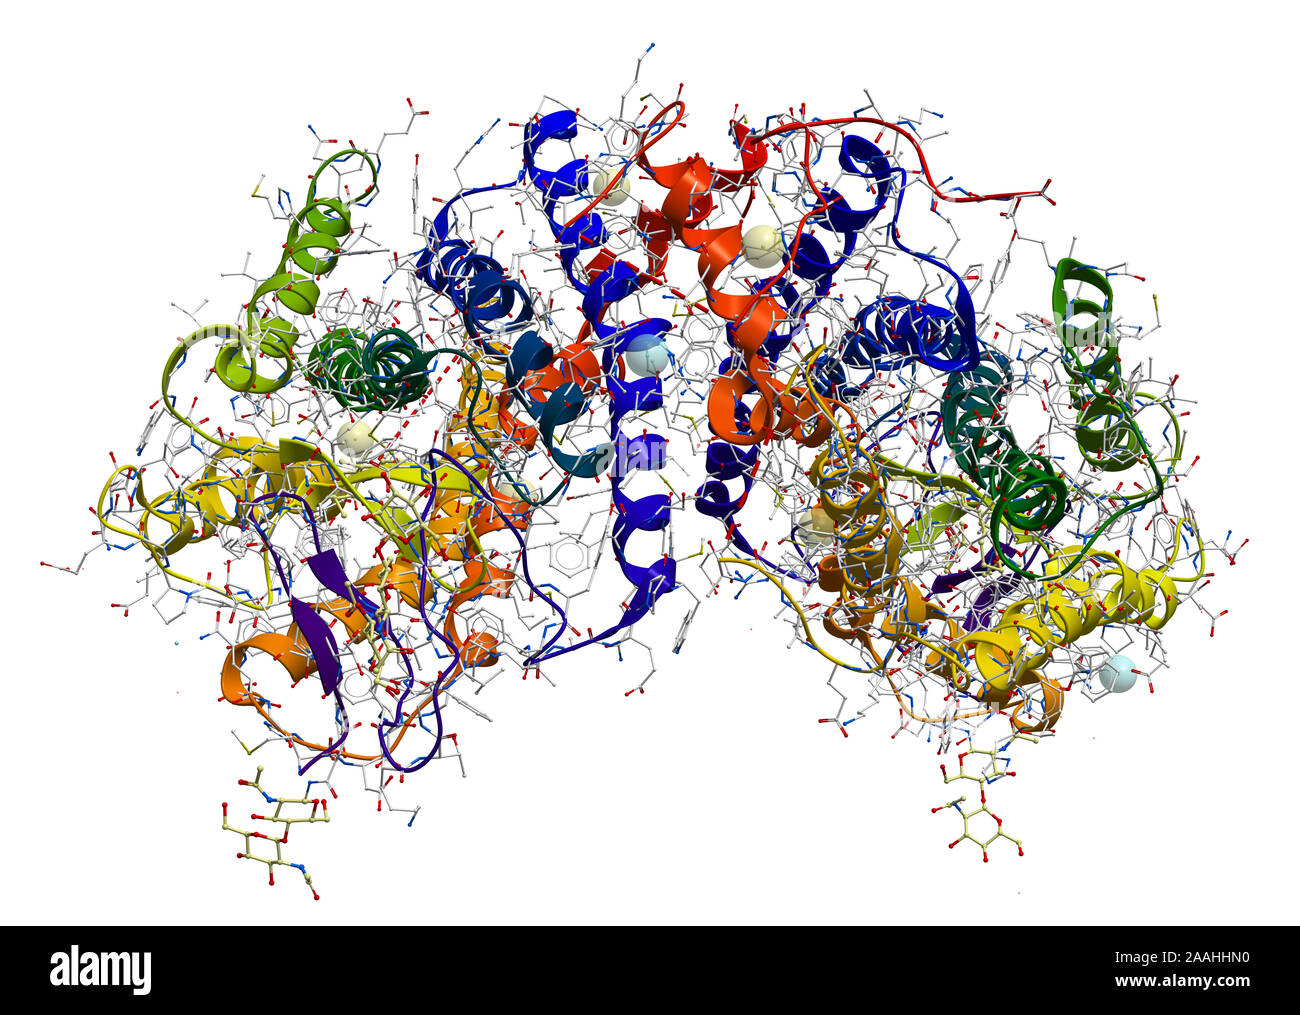 La rodopsina (el pigmento extremadamente sensible a la luz involucrados en el proceso de visión) la estructura de las proteínas Foto de stock